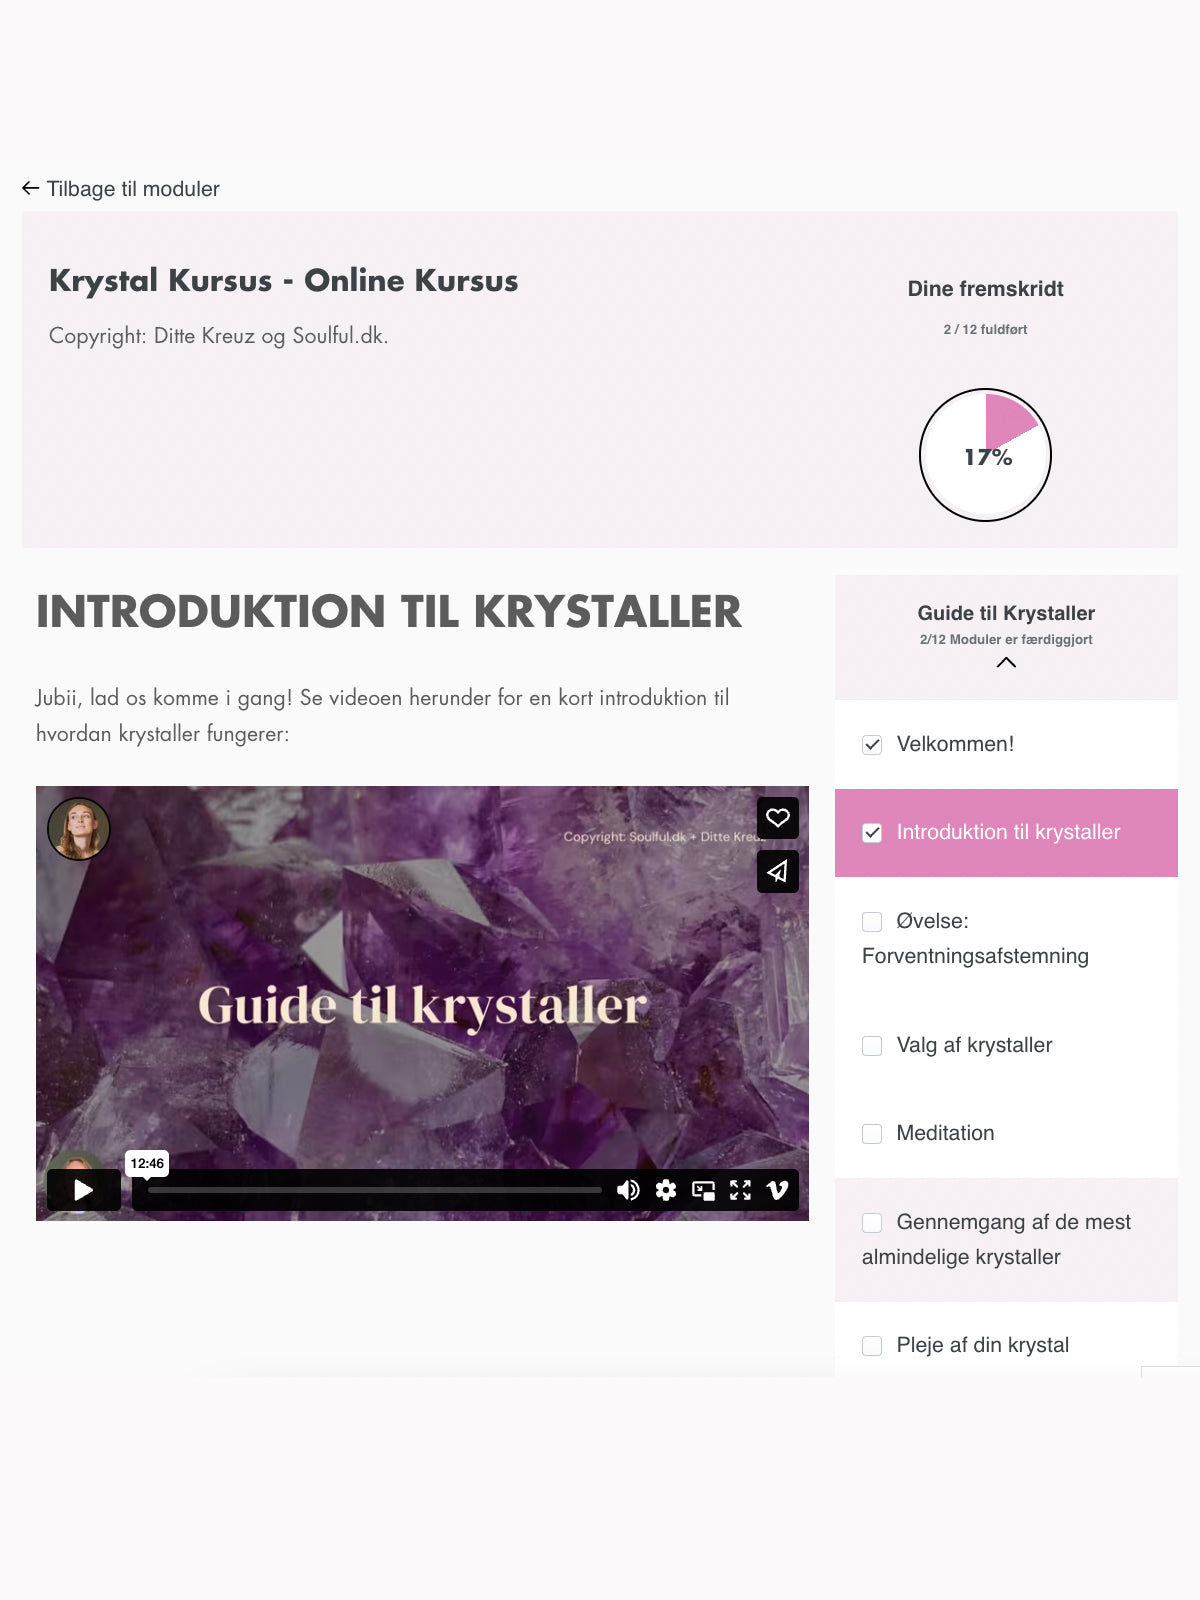 Krystal Kursus - Online Kursus